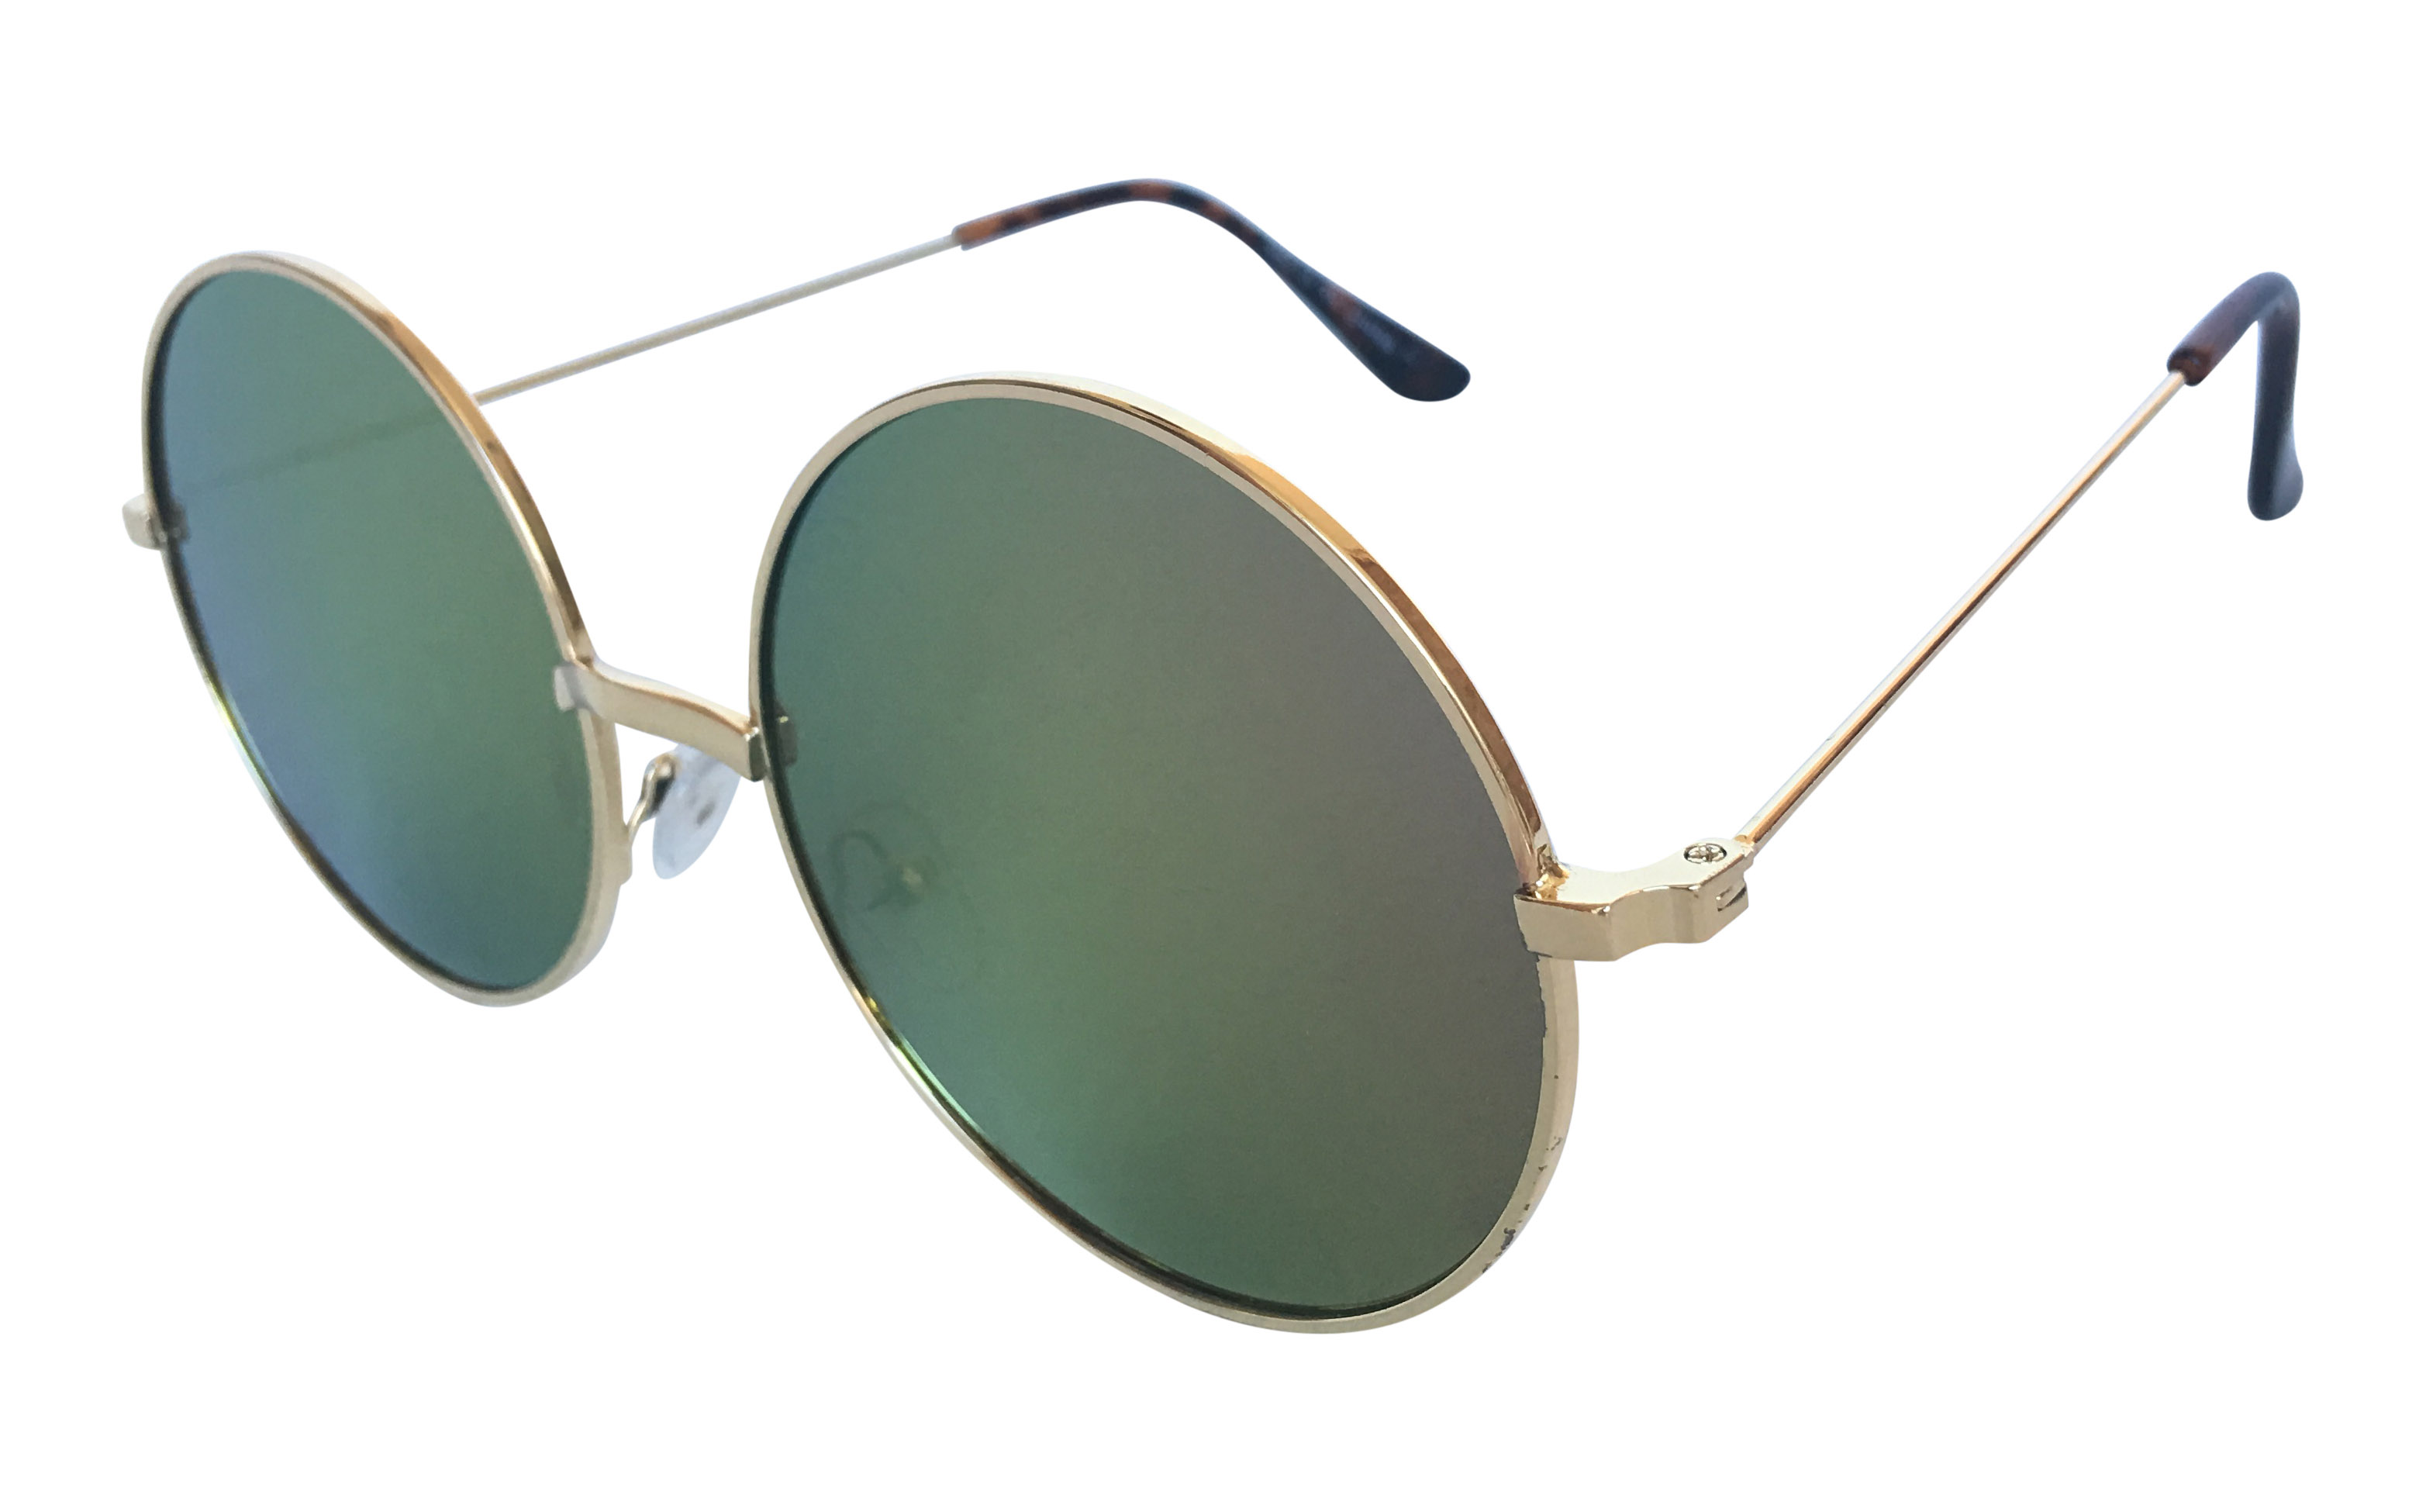 STOR Fed solbrille i guldfarvet metalstel med FLADE lyserød-grønlig changerende linser. Kendt som john lennon solbrillen. Hippie solbrille mode | solbriller_maend-2